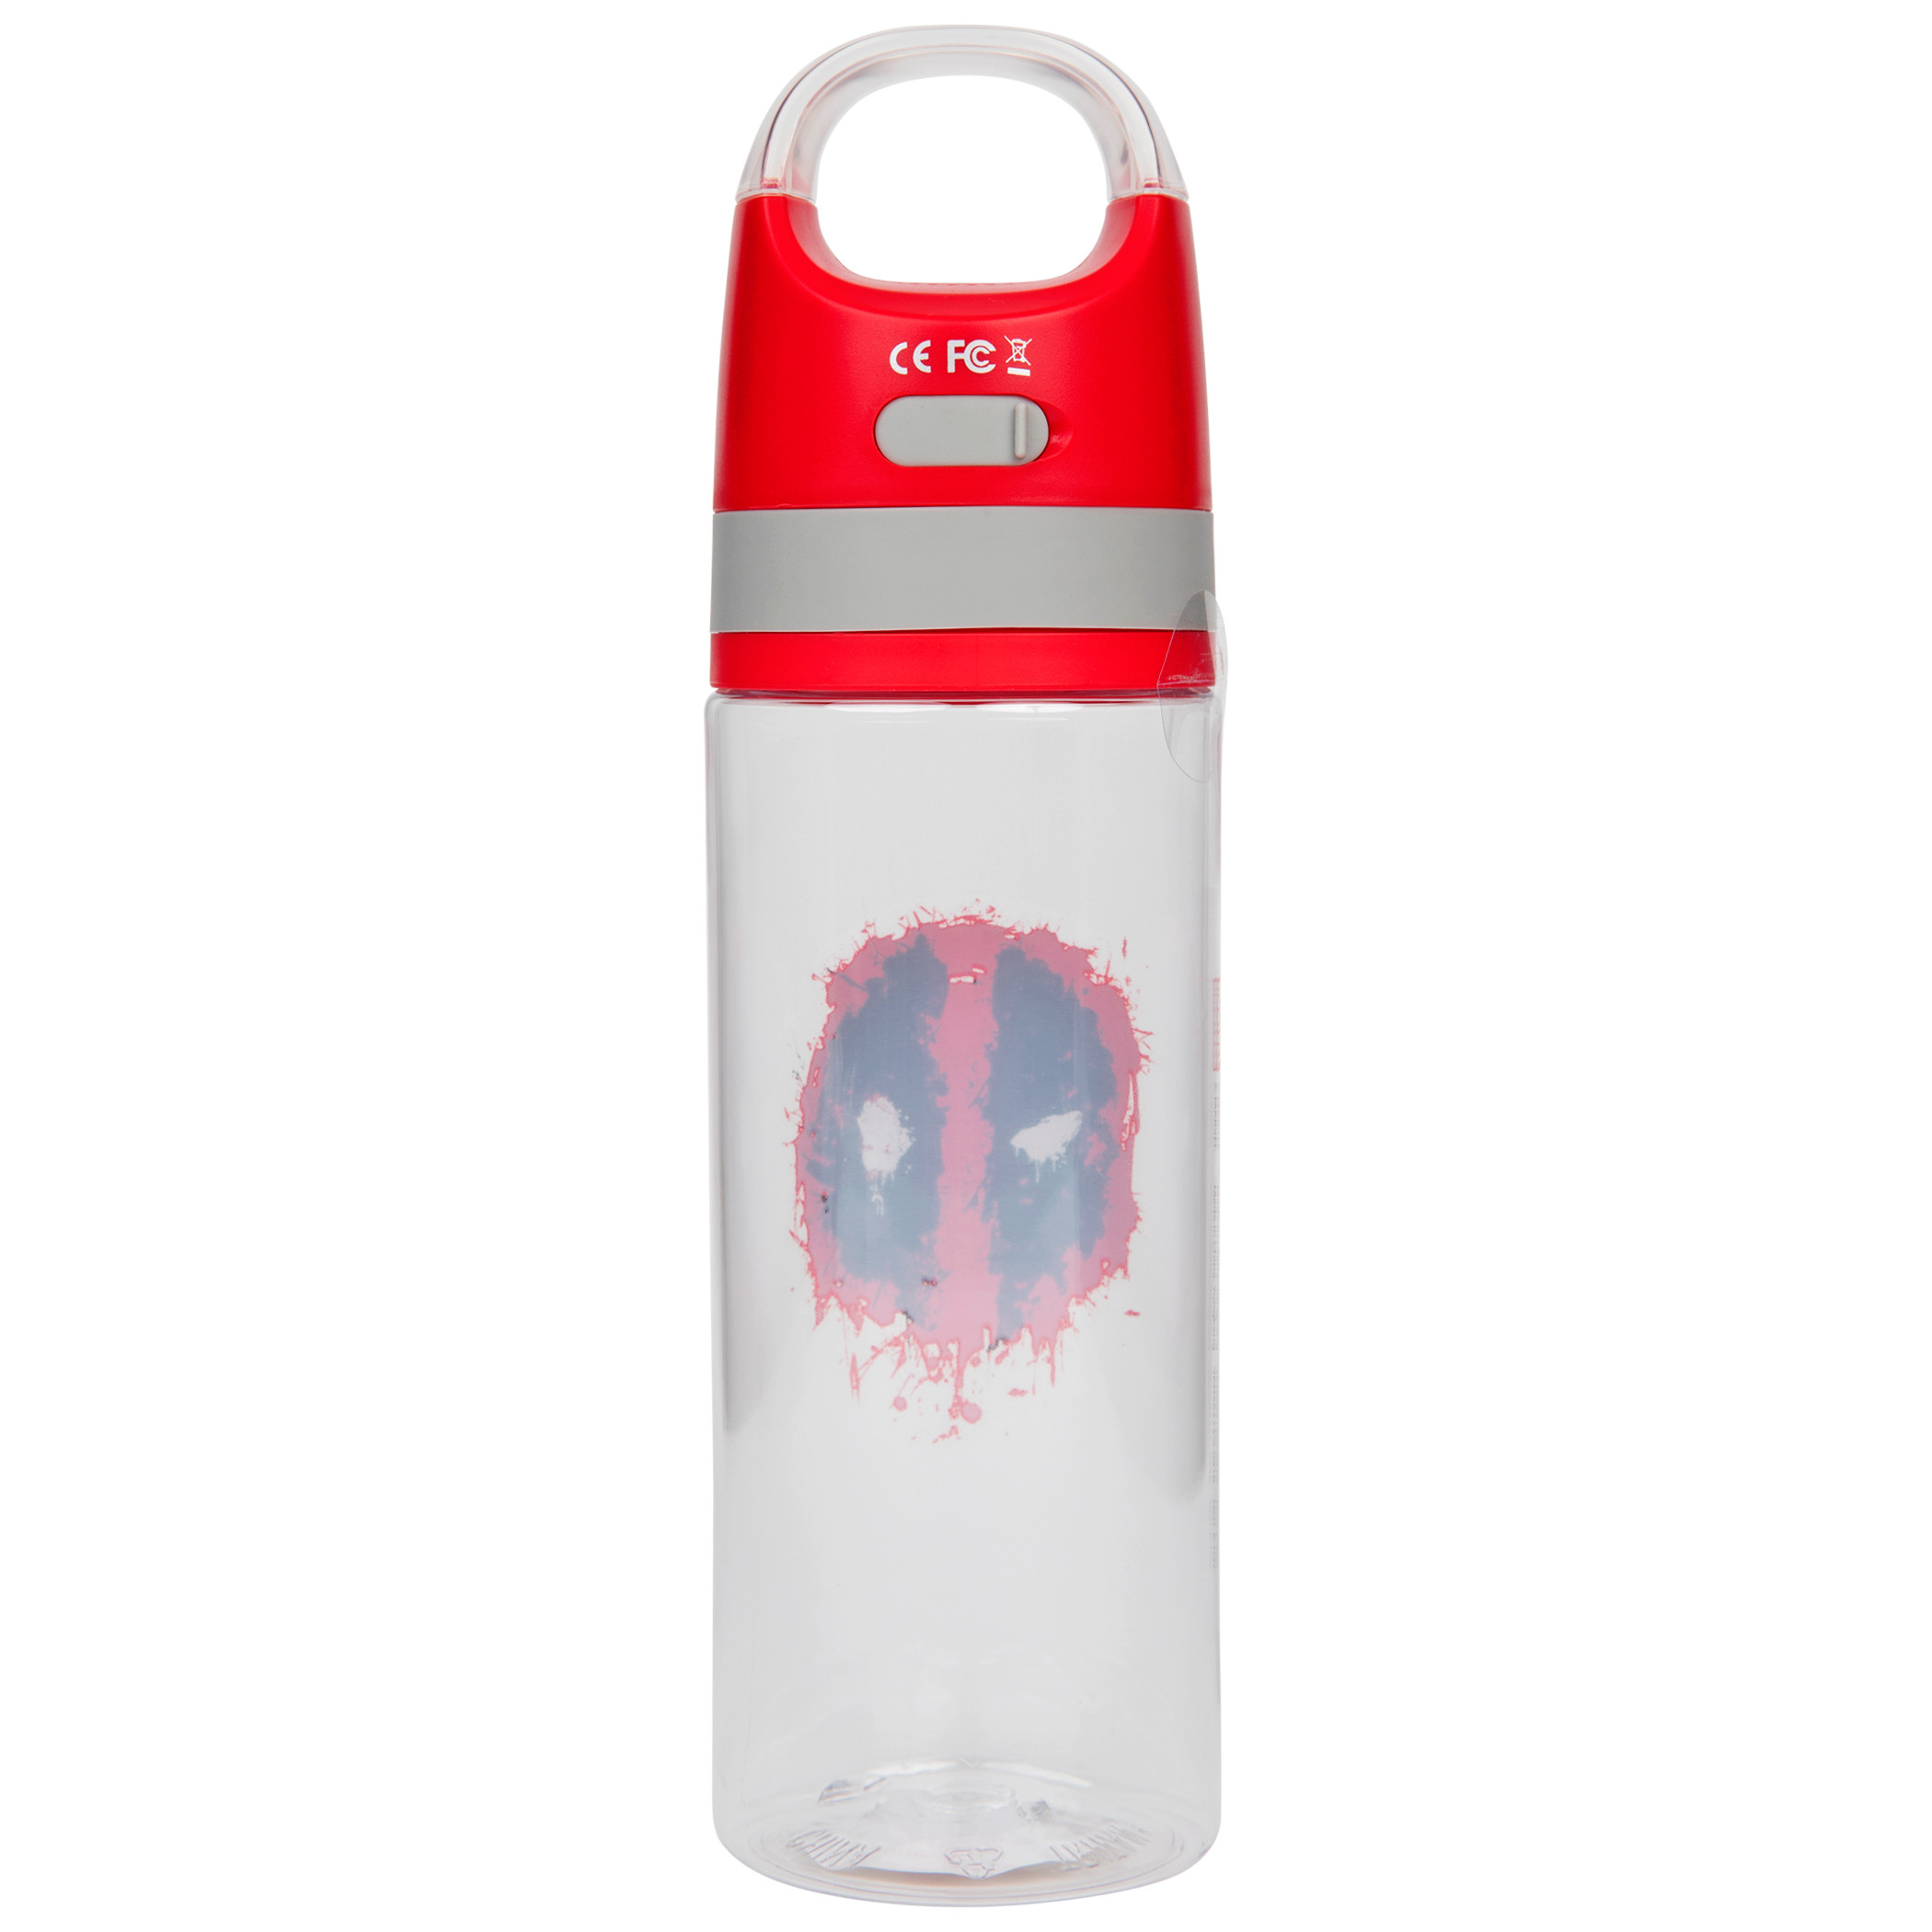 Deadpool Splatter Symbol Water Bottle with Wireless Speaker